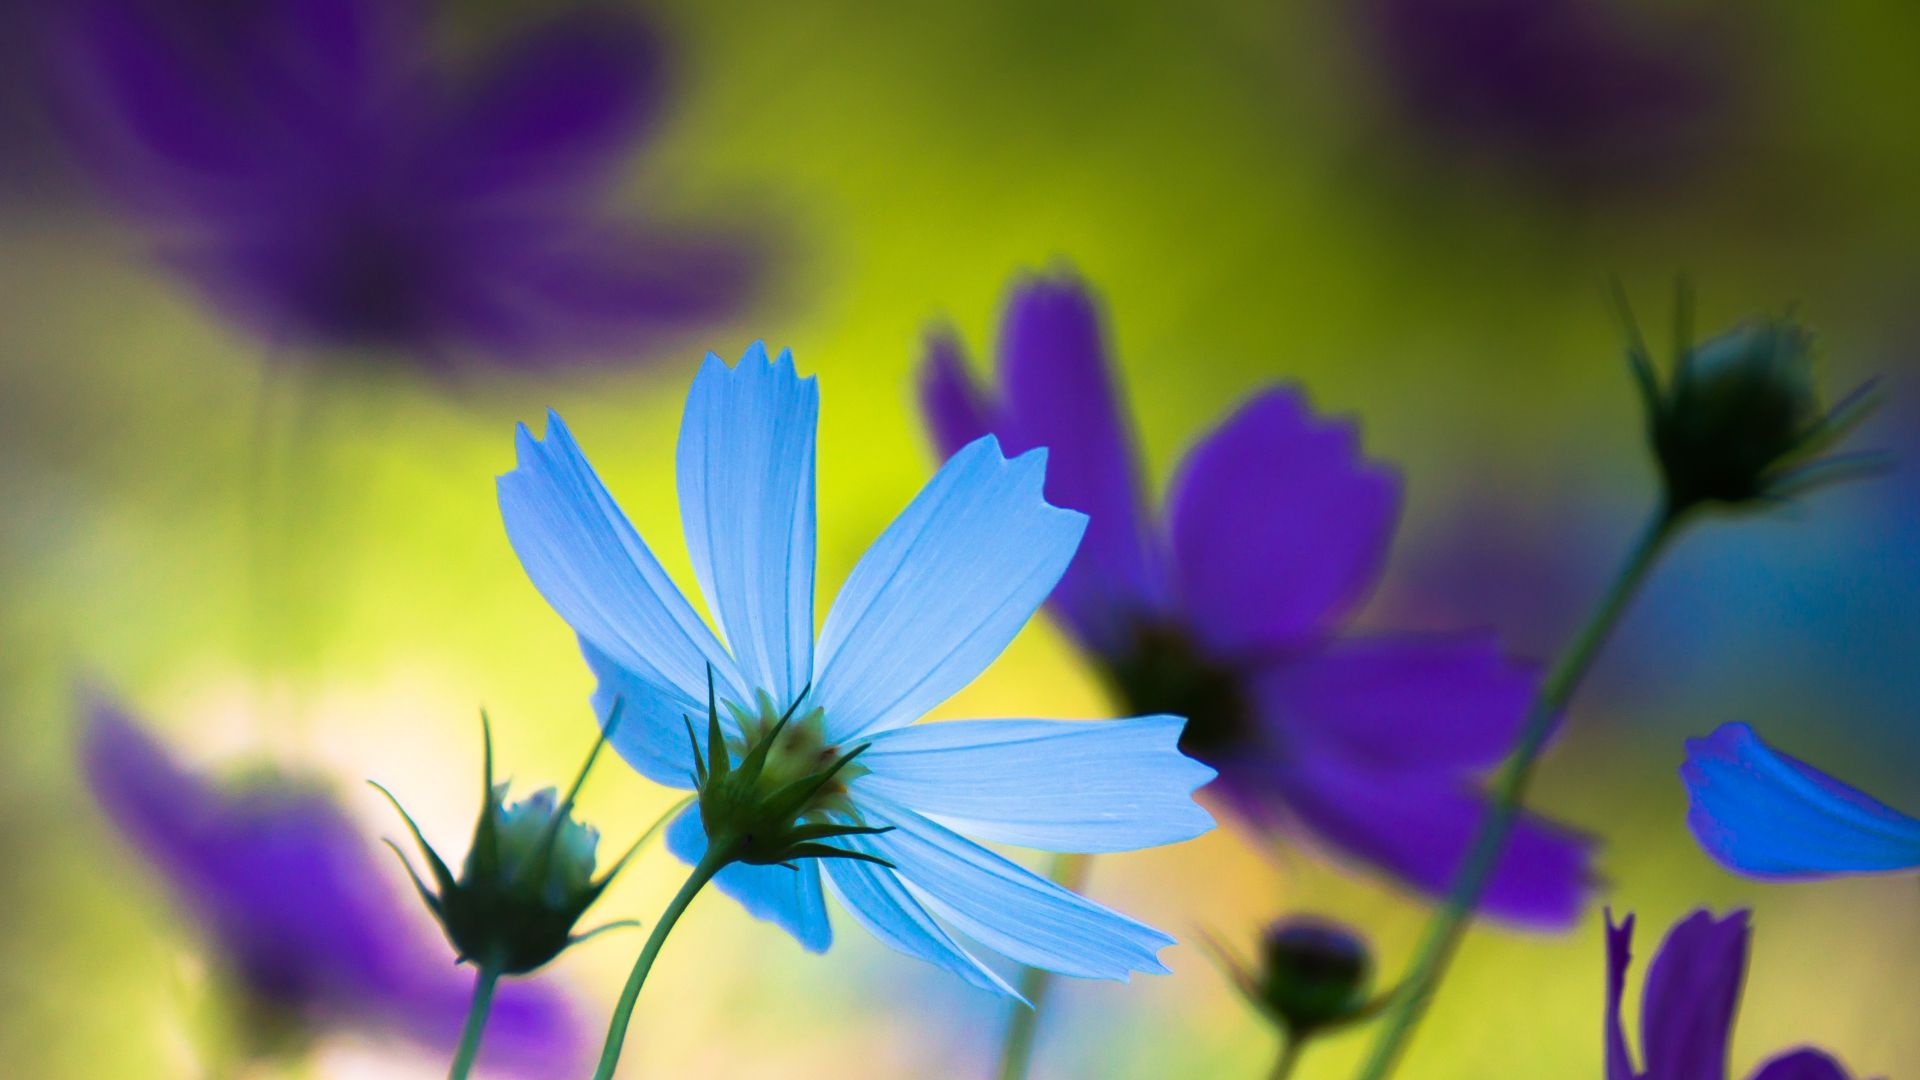 Васильки, 4k, HD, голубой, Cornflowers, 4k, HD wallpaper, blue (horizontal)